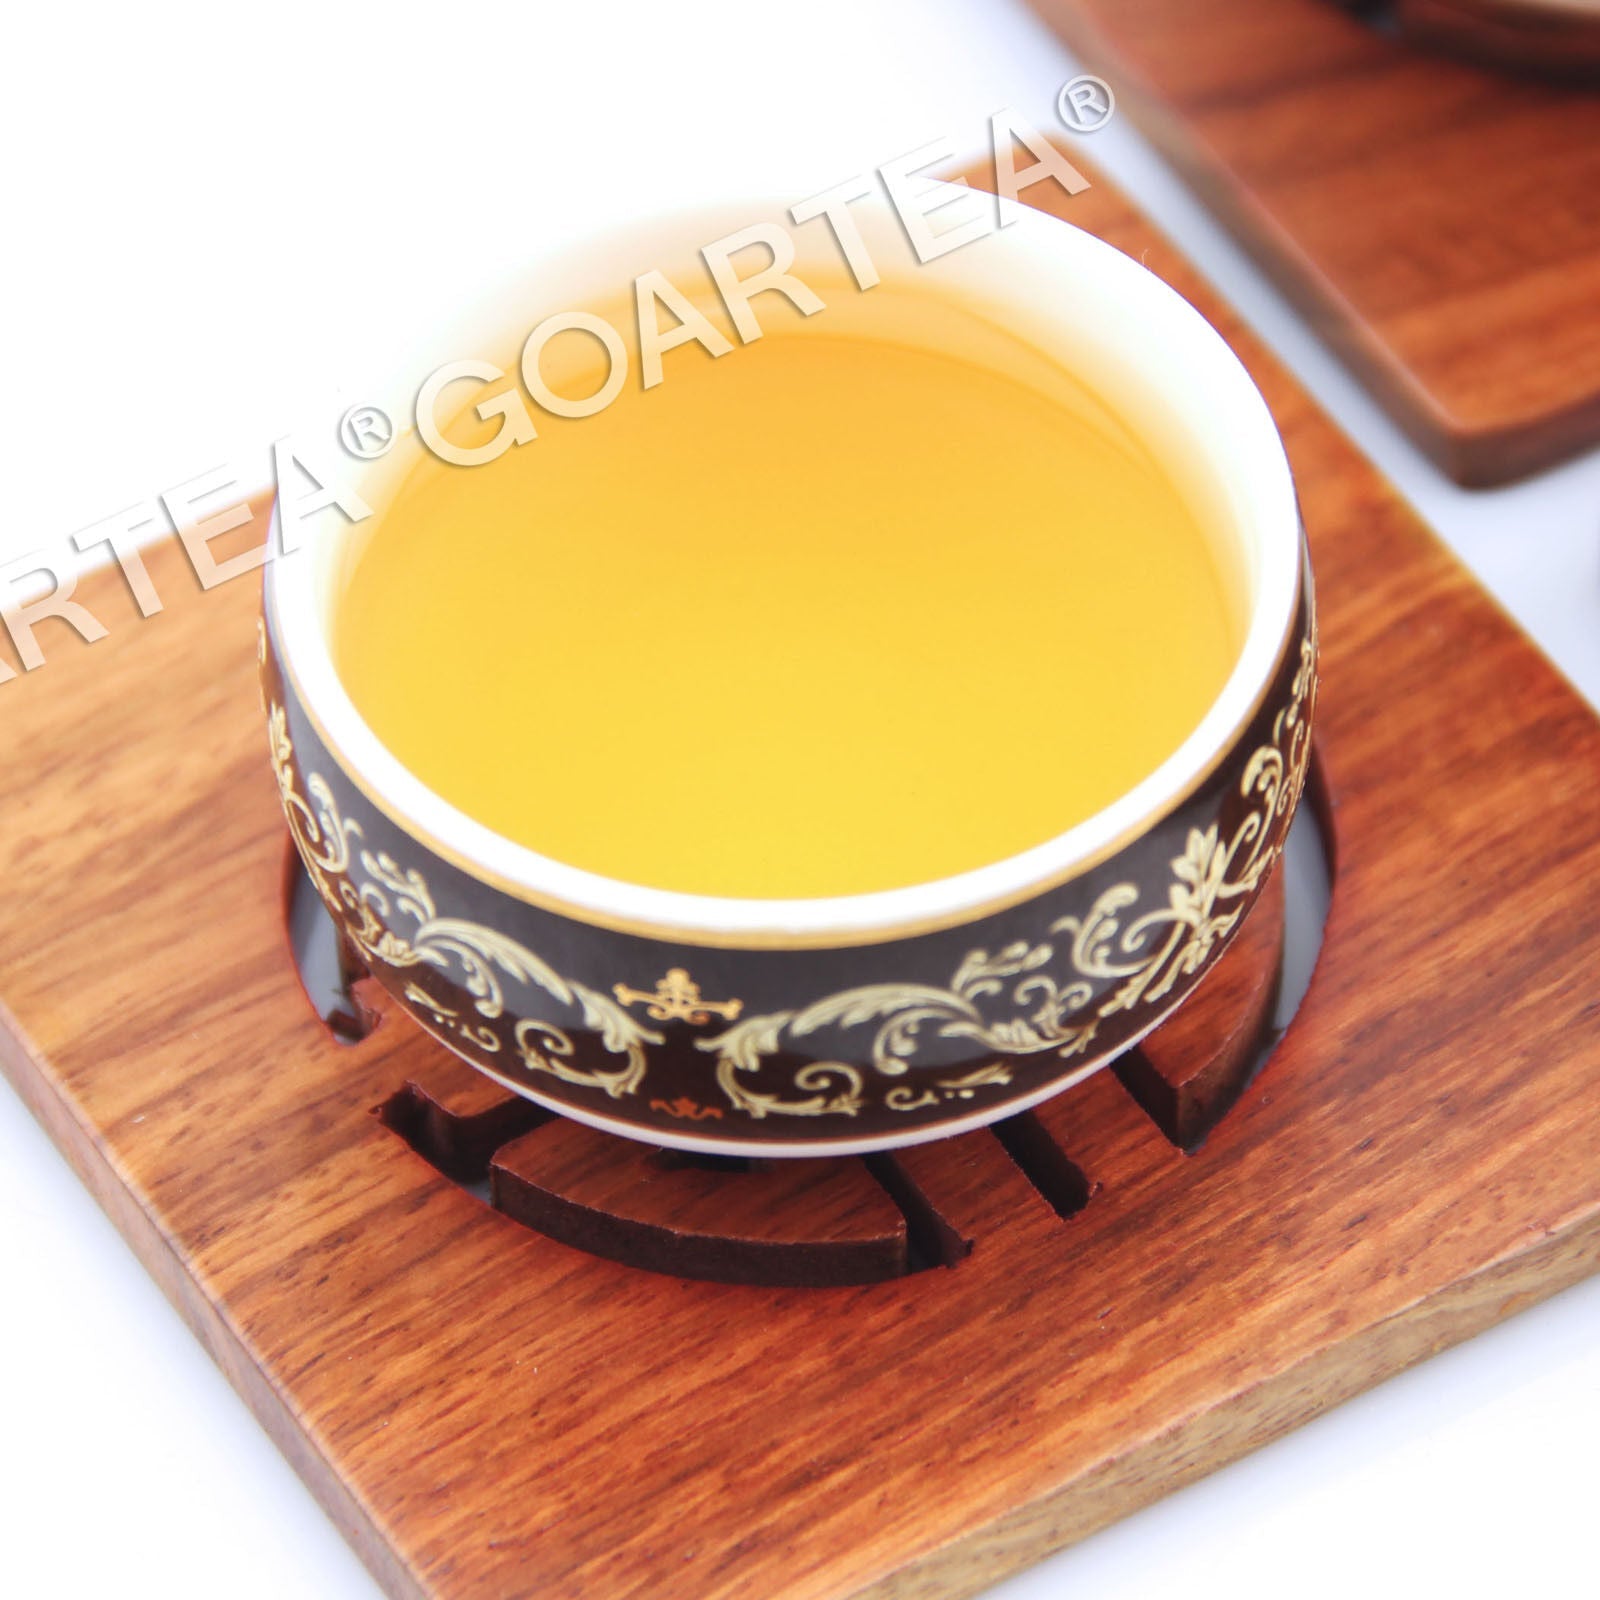 HelloYoung 2014 Year 300g Supreme Silver Needle White Tea Cake Fuding Bai Hao Yin Zhen Tips